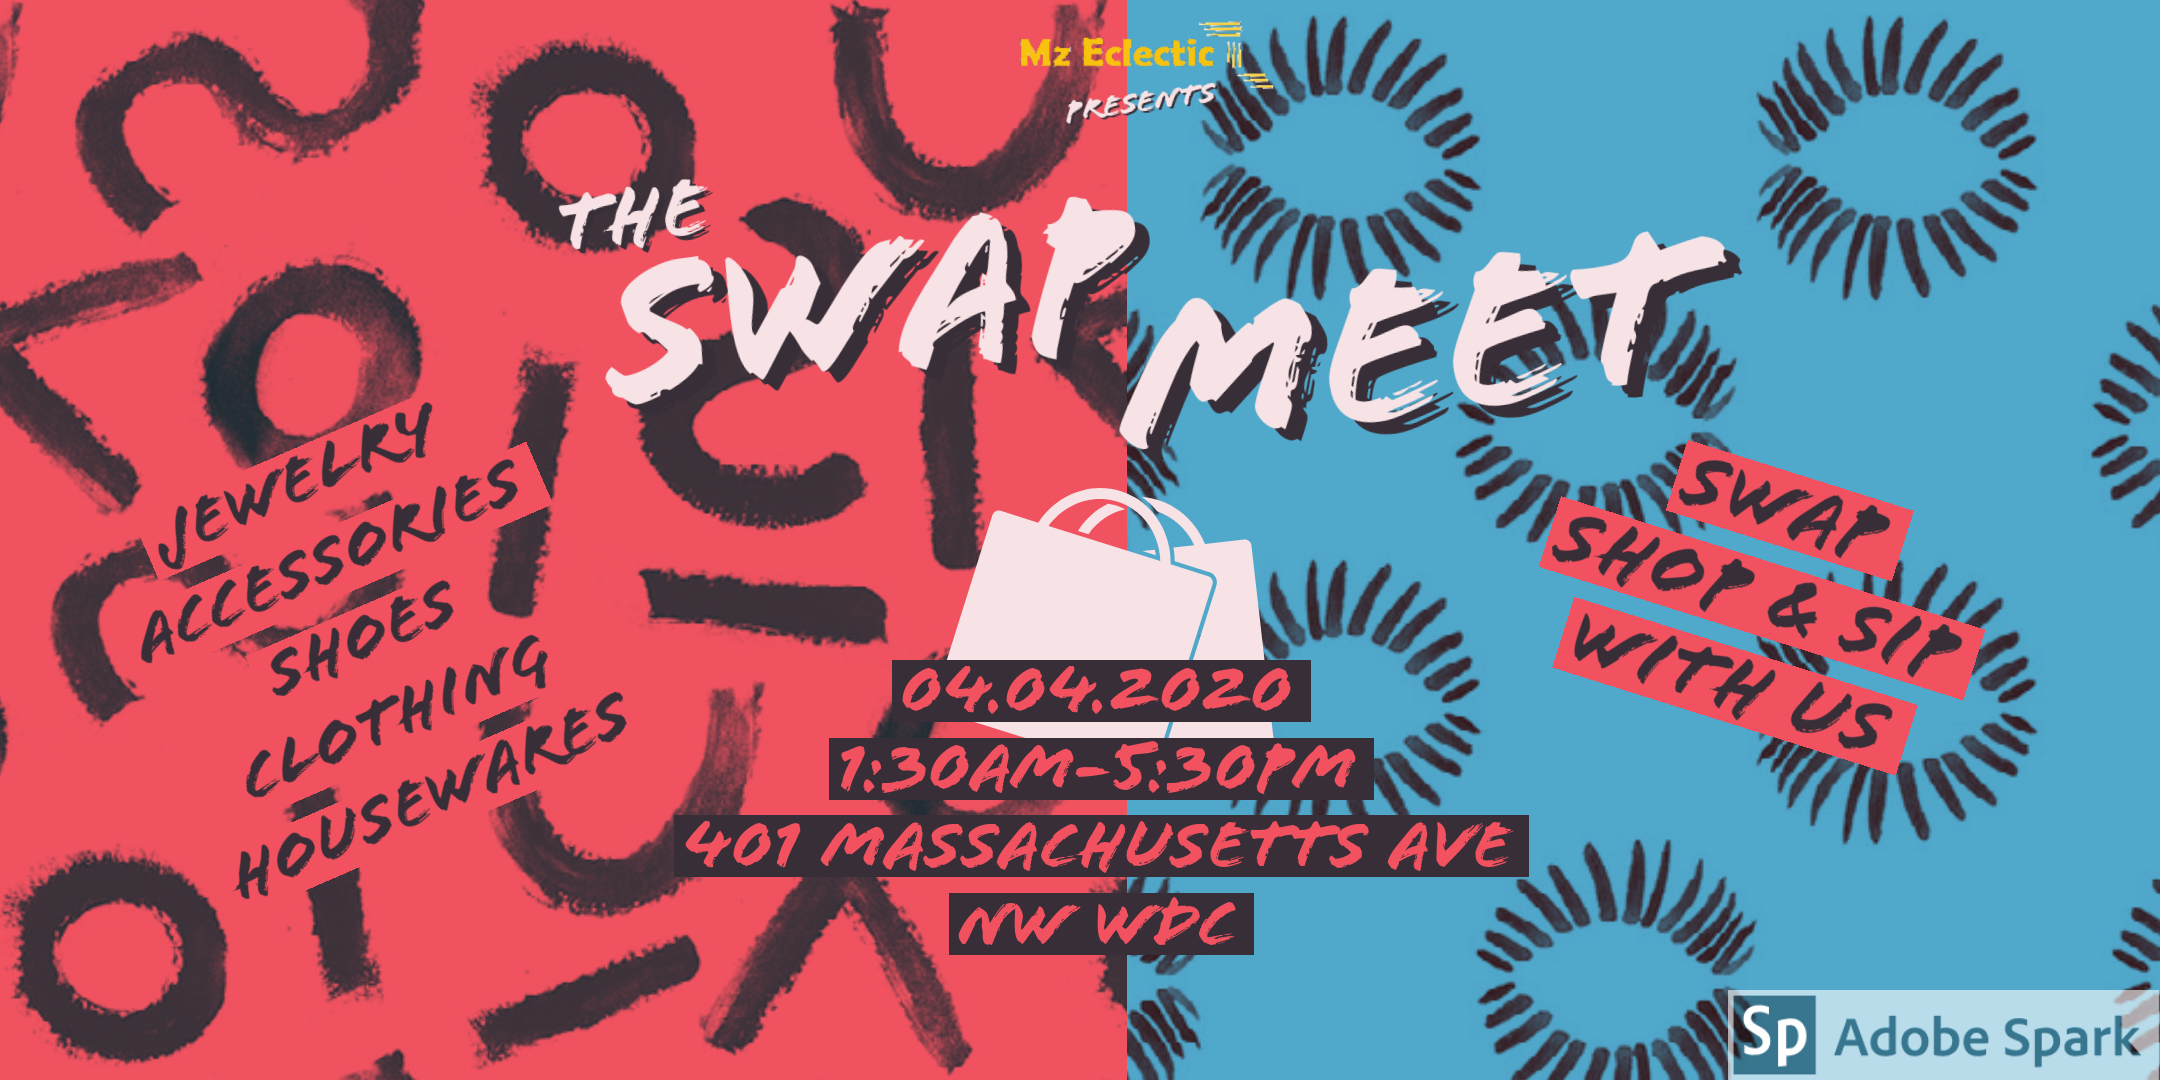 Mz Eclectic presents -The Swap Meet